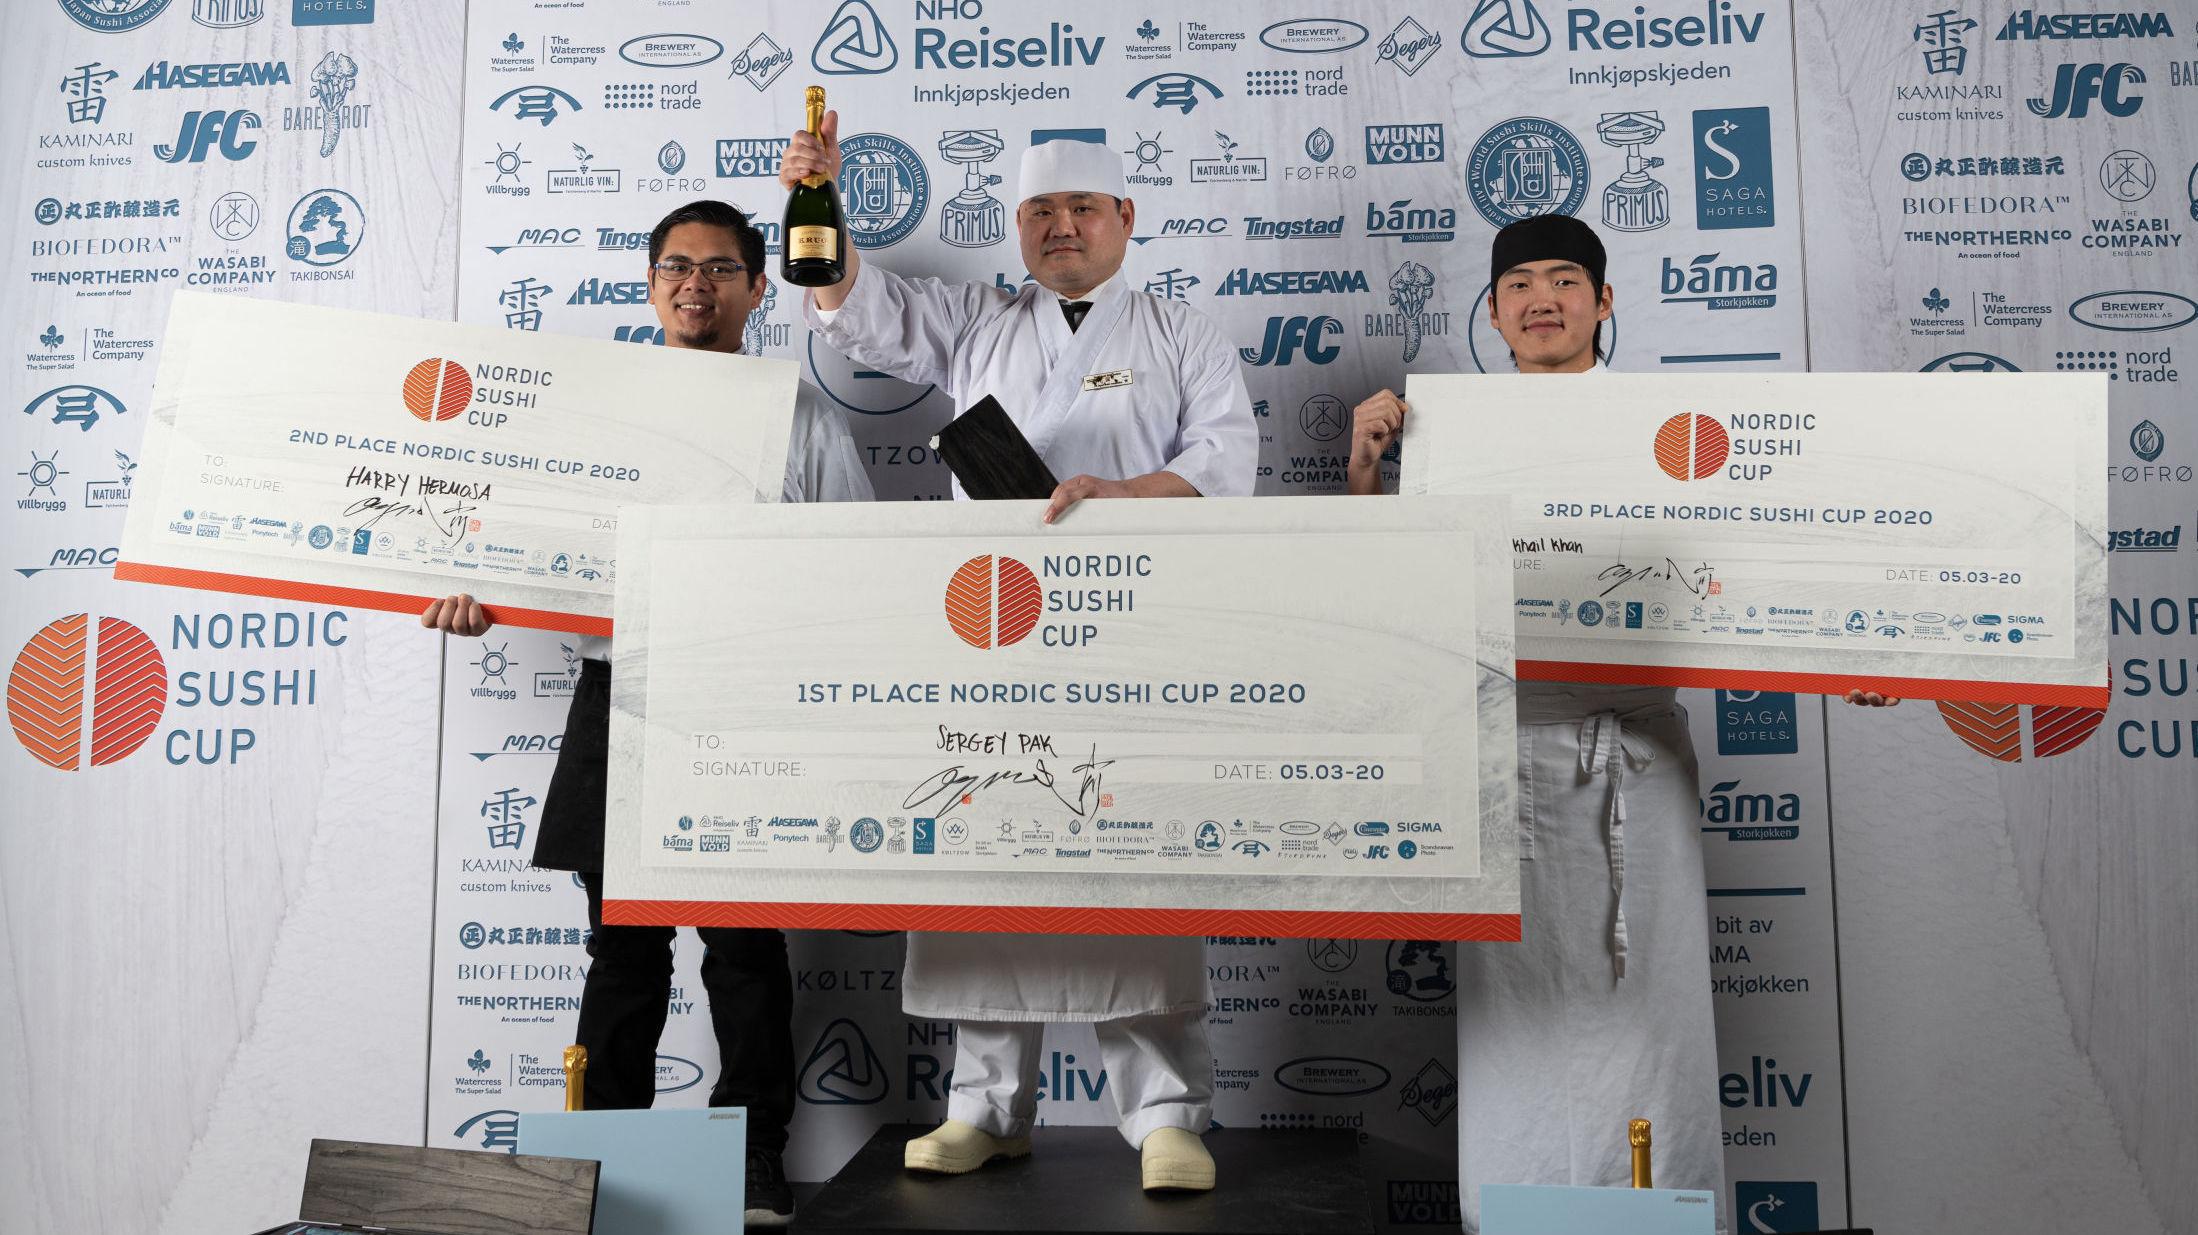 STORESLEM: Norge tok første-, andre- og tredjeplass under det nordiske mesterskapet i sushi. Fra venstre Harry Hermosa, Sergey Pak og Mikhail Khan. Foto: Haakon Hoseth